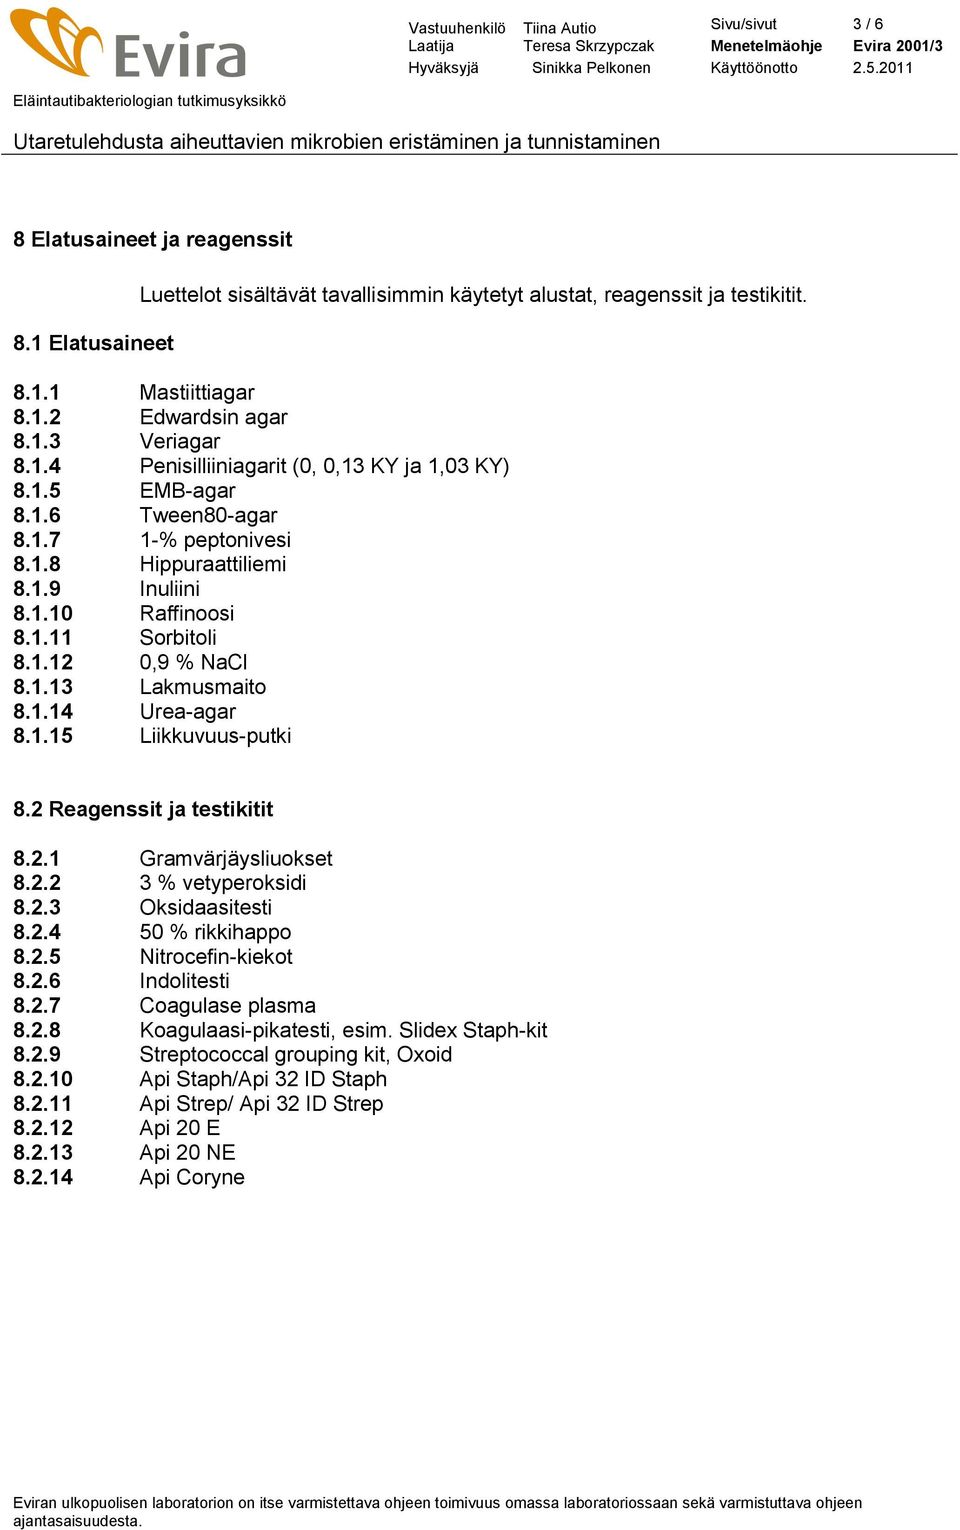 1.14 Urea-agar 8.1.15 Liikkuvuus-putki 8.2 Reagenssit ja testikitit 8.2.1 Gramvärjäysliuokset 8.2.2 3 % vetyperoksidi 8.2.3 Oksidaasitesti 8.2.4 50 % rikkihappo 8.2.5 Nitrocefin-kiekot 8.2.6 Indolitesti 8.